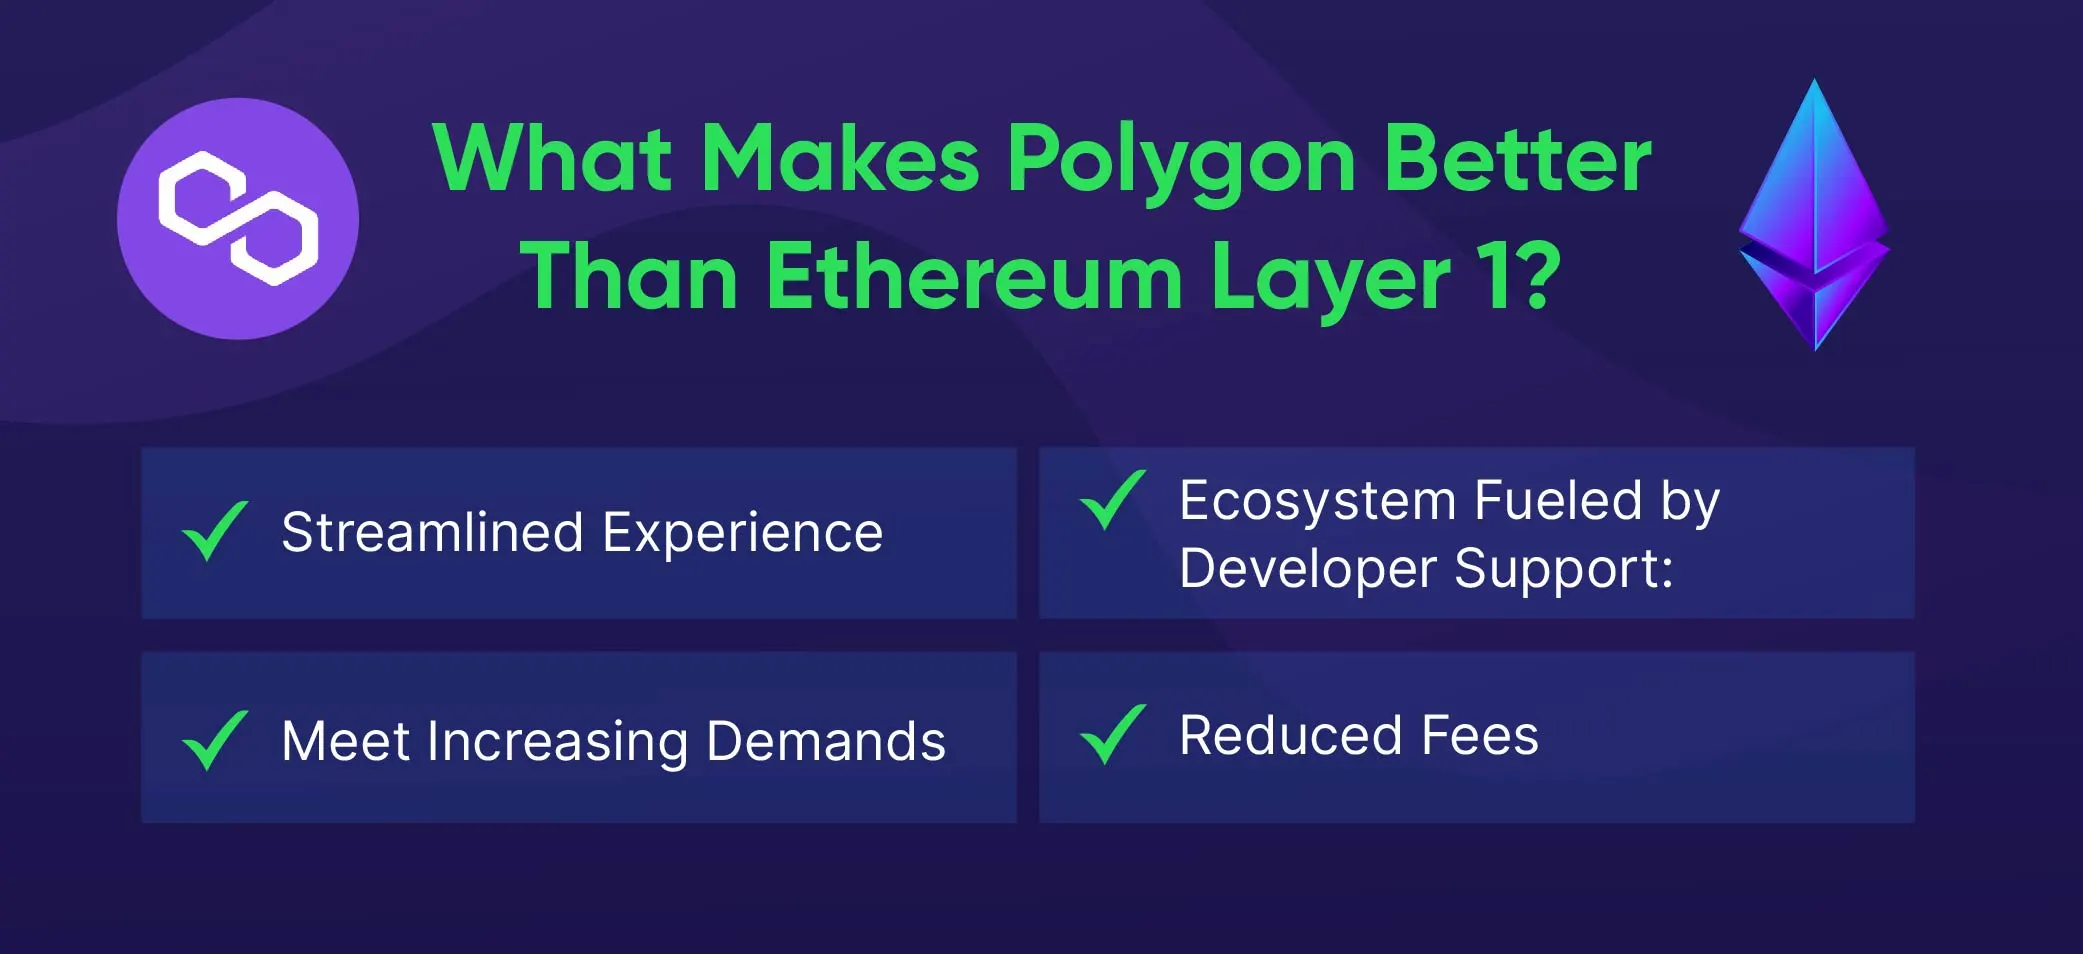 Polygon Blockchain 